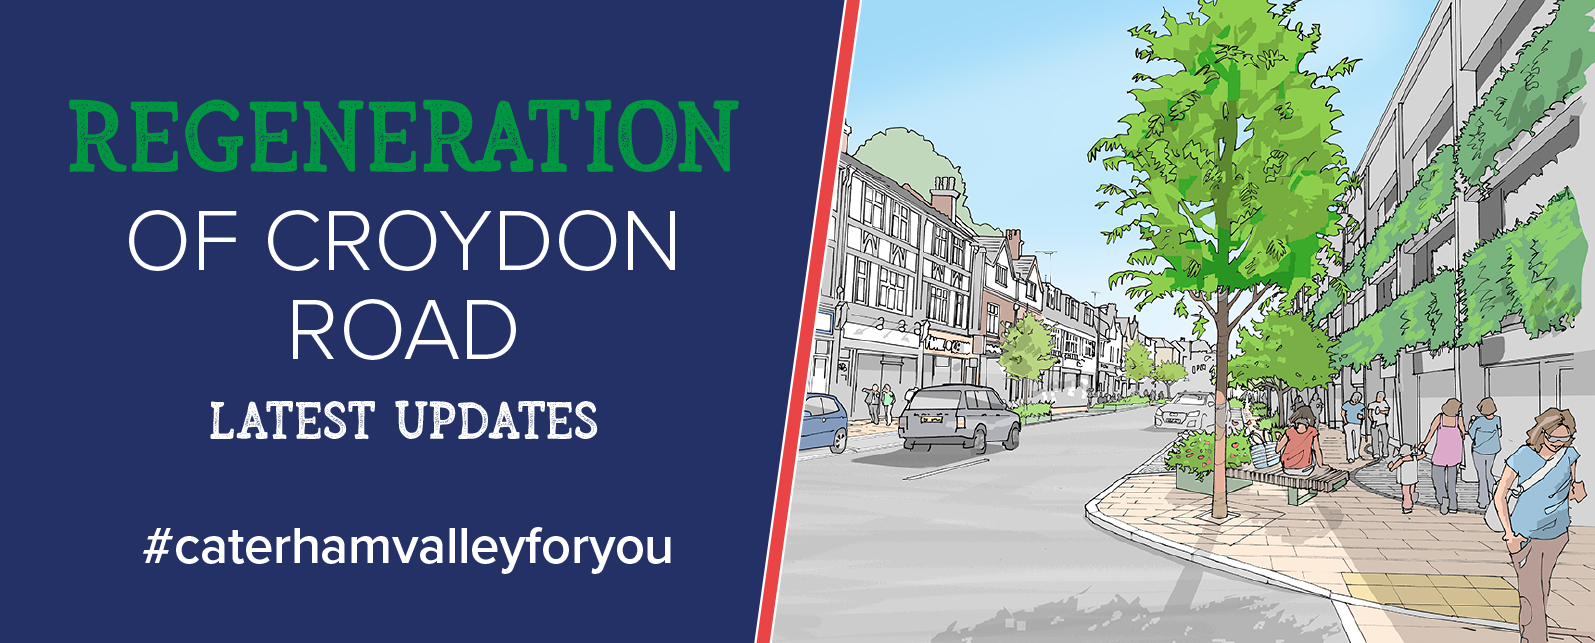 Regeneration of Croydon Road